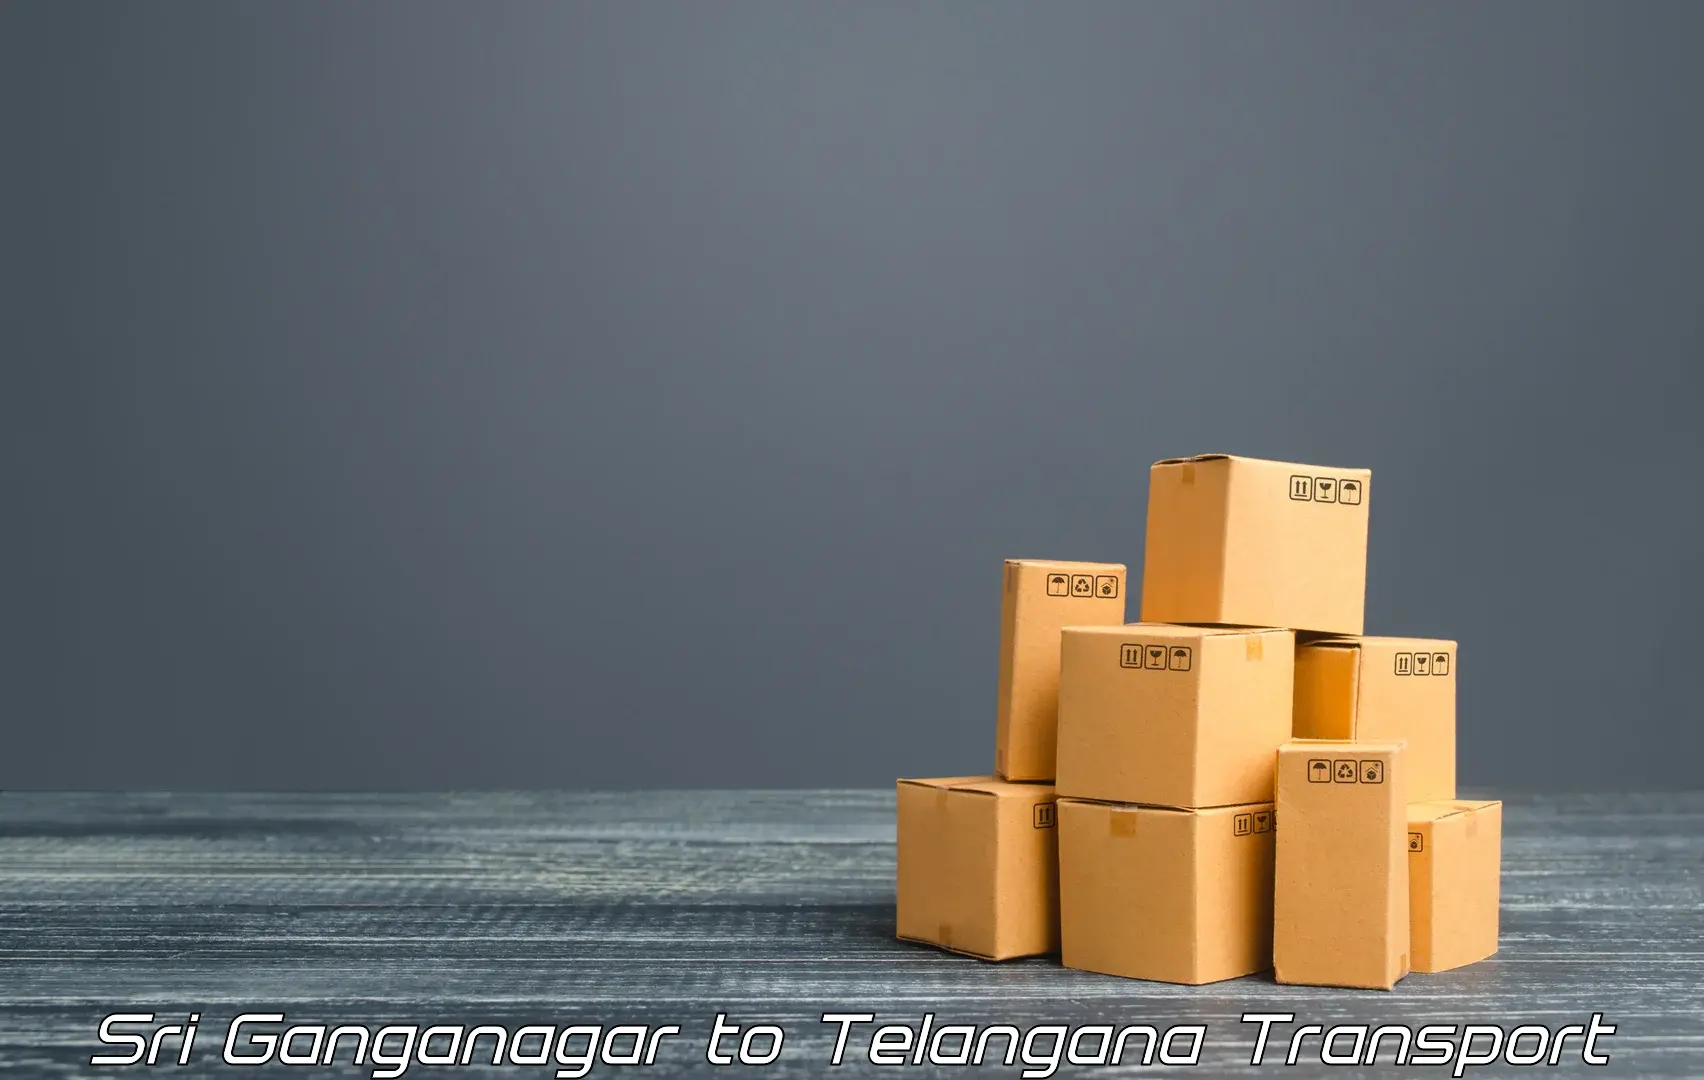 Luggage transport services Sri Ganganagar to Cheyyur